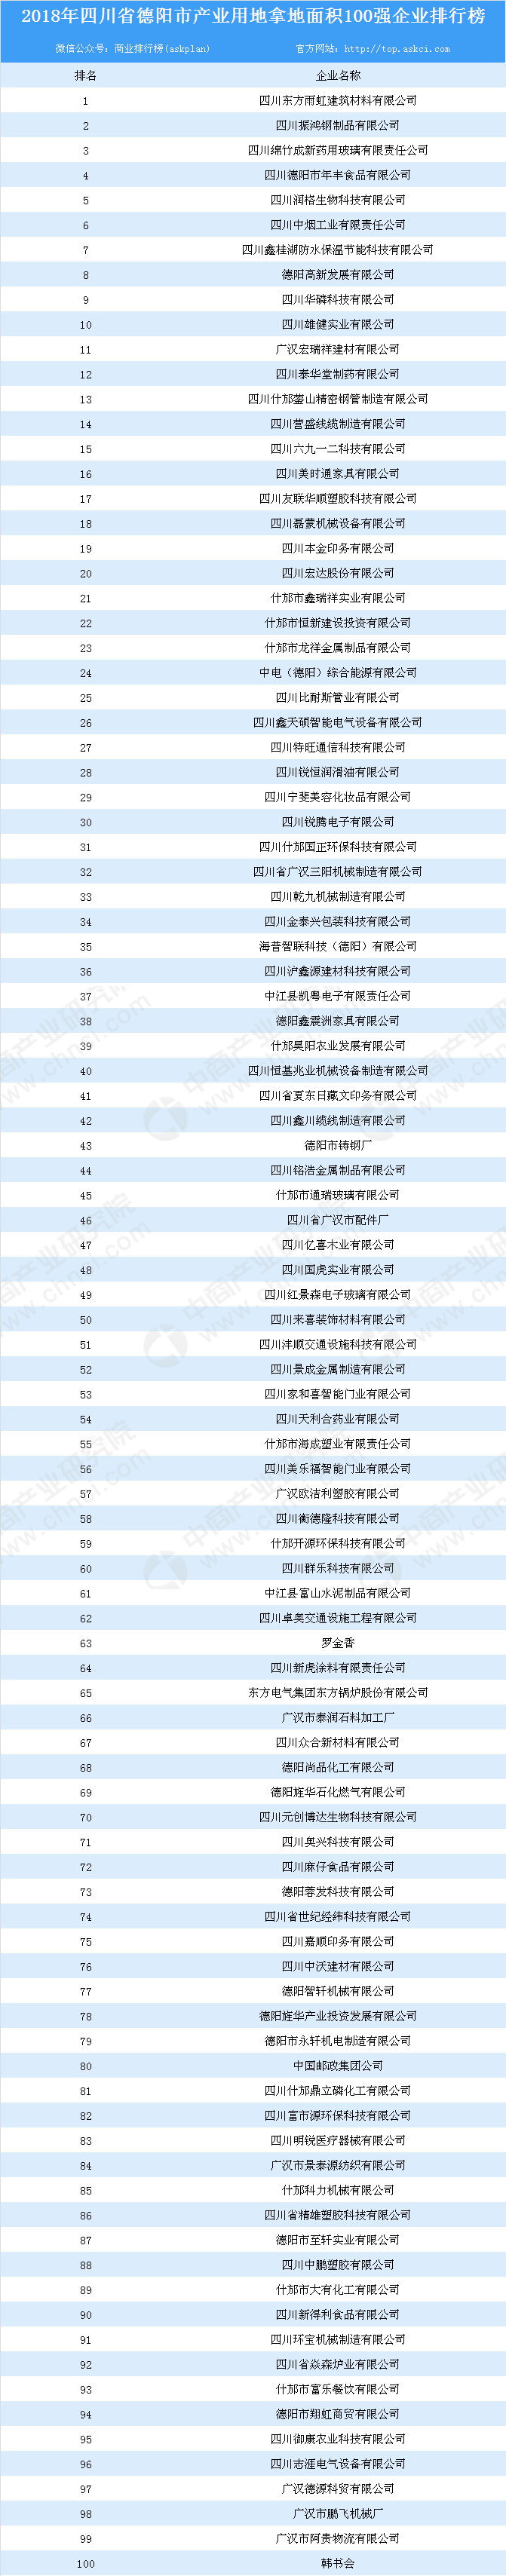 2018年四川德阳市产业用地拿地面积100强企业排行榜